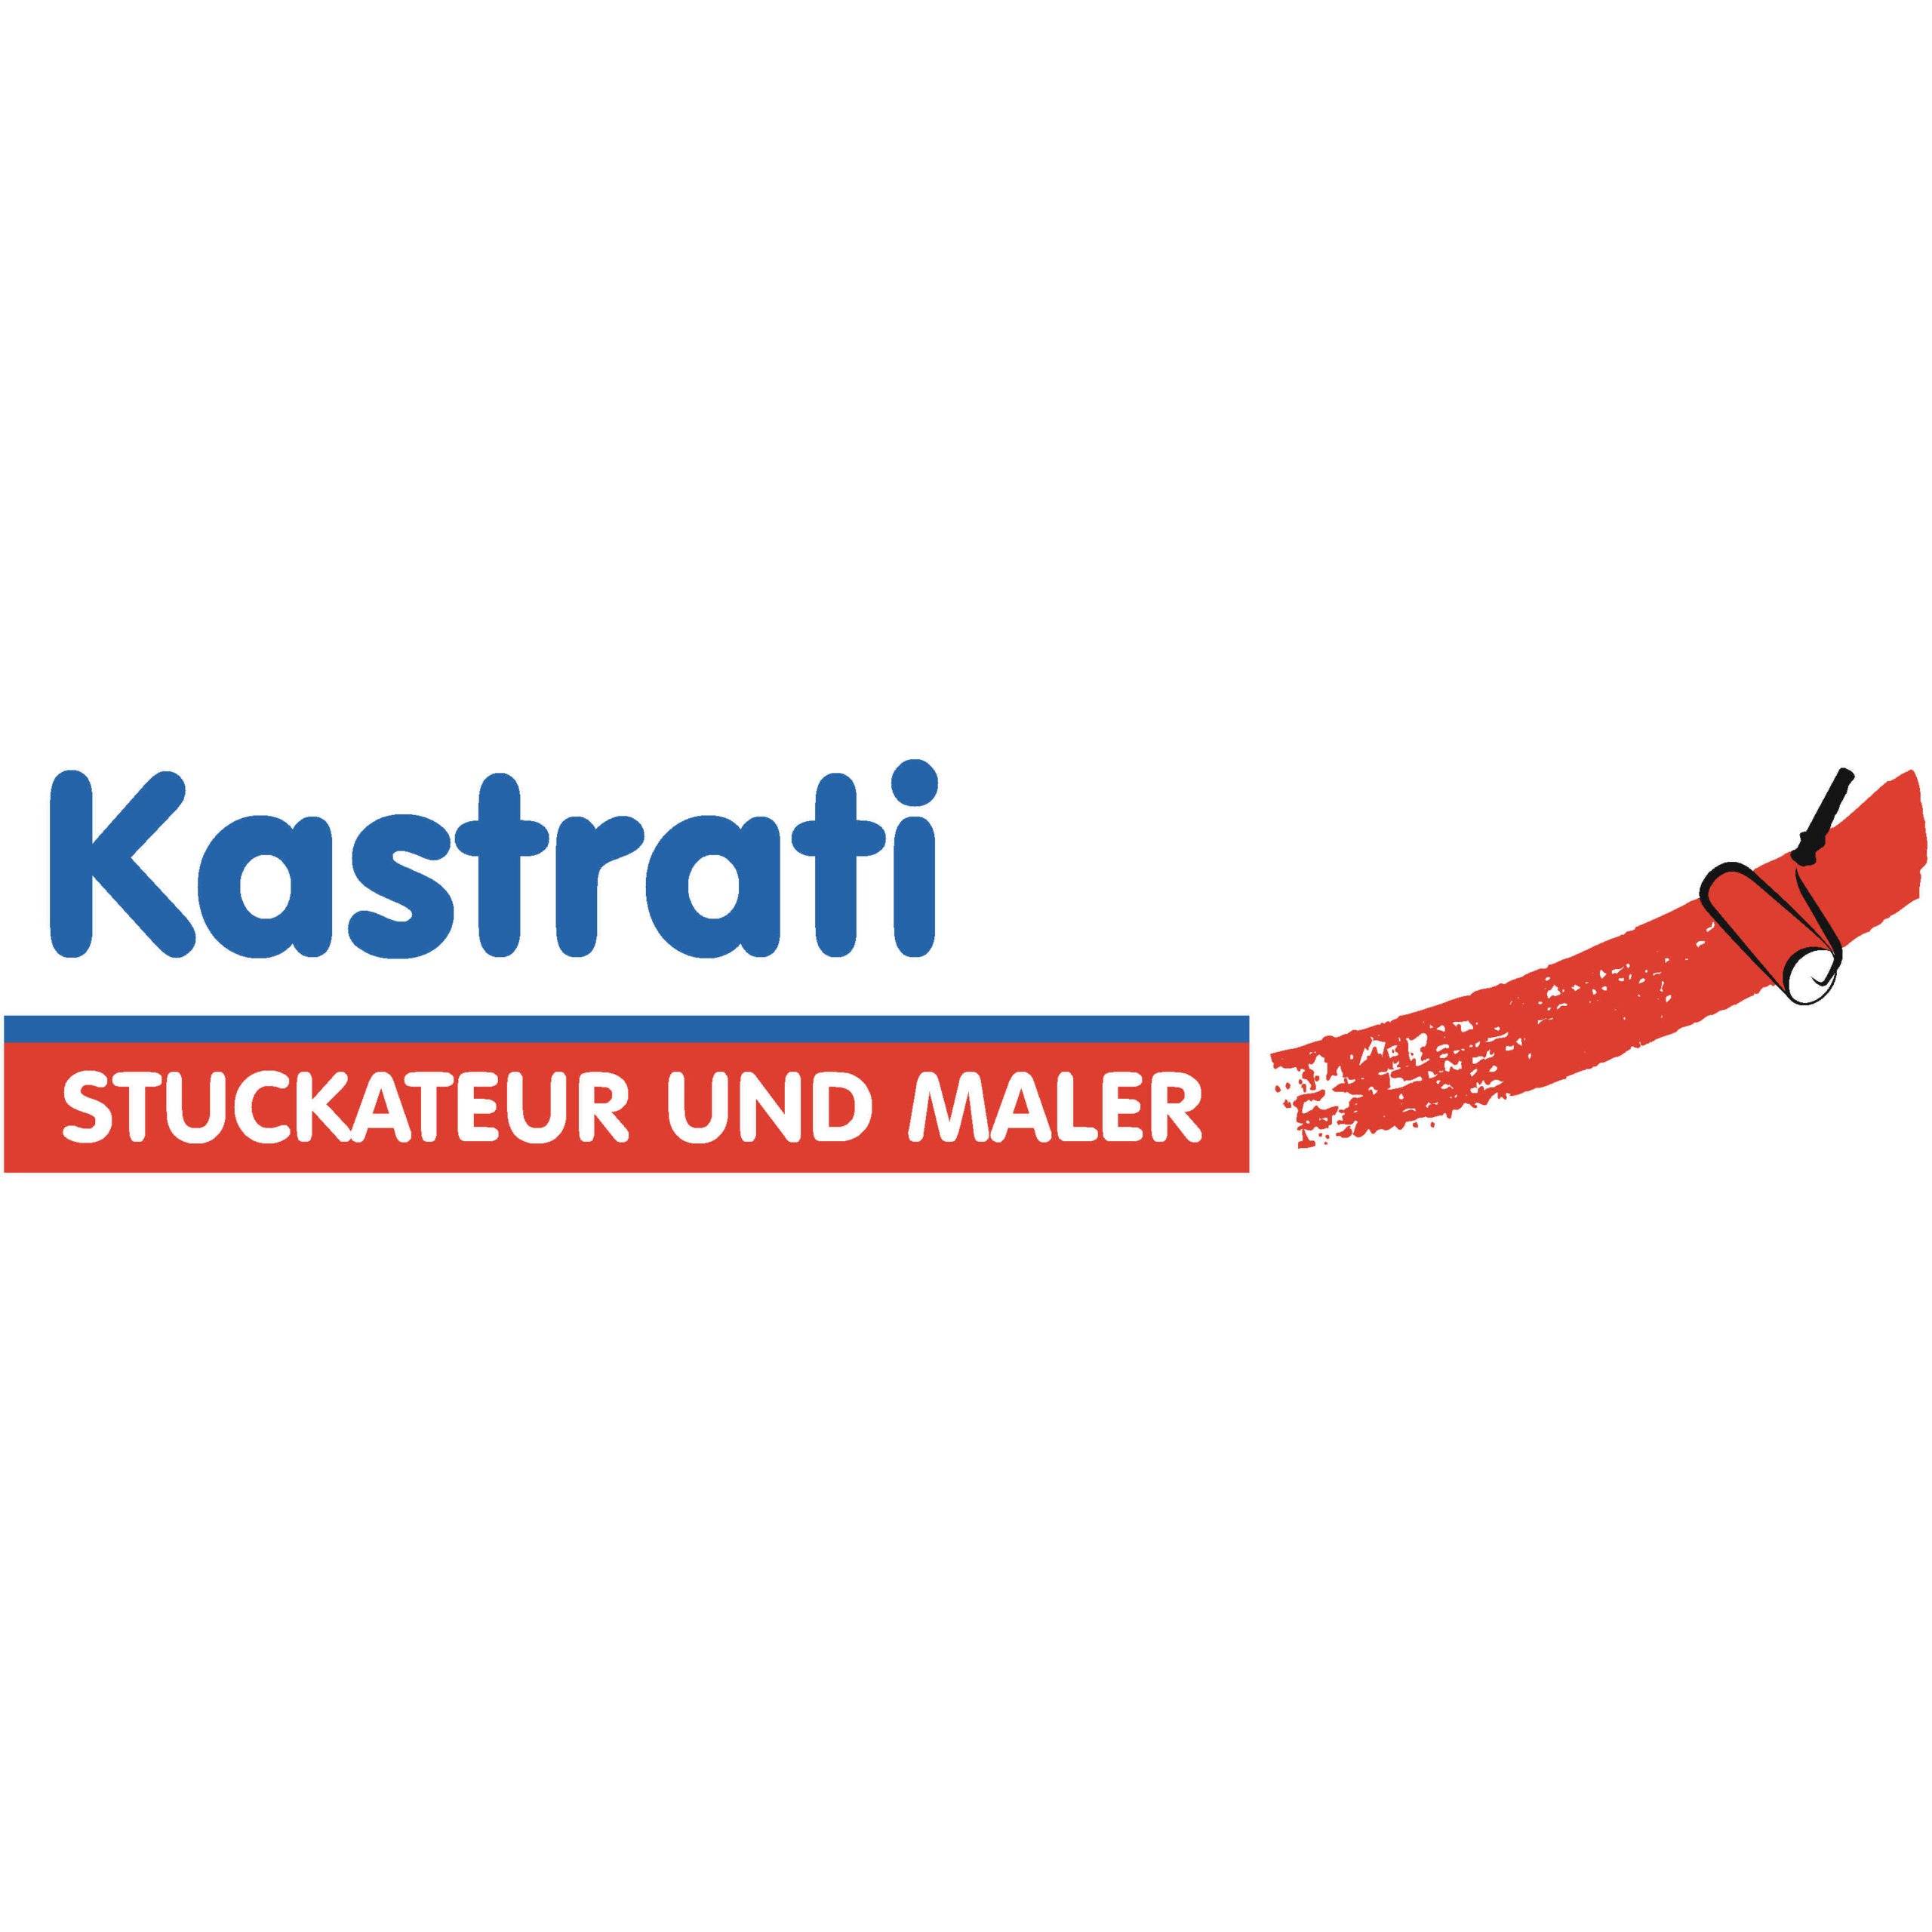 Logo Der rote Farbroller steht für das Logo der Kastrati Stuckateur und Maler aus dem Raum Ludwigsburg.